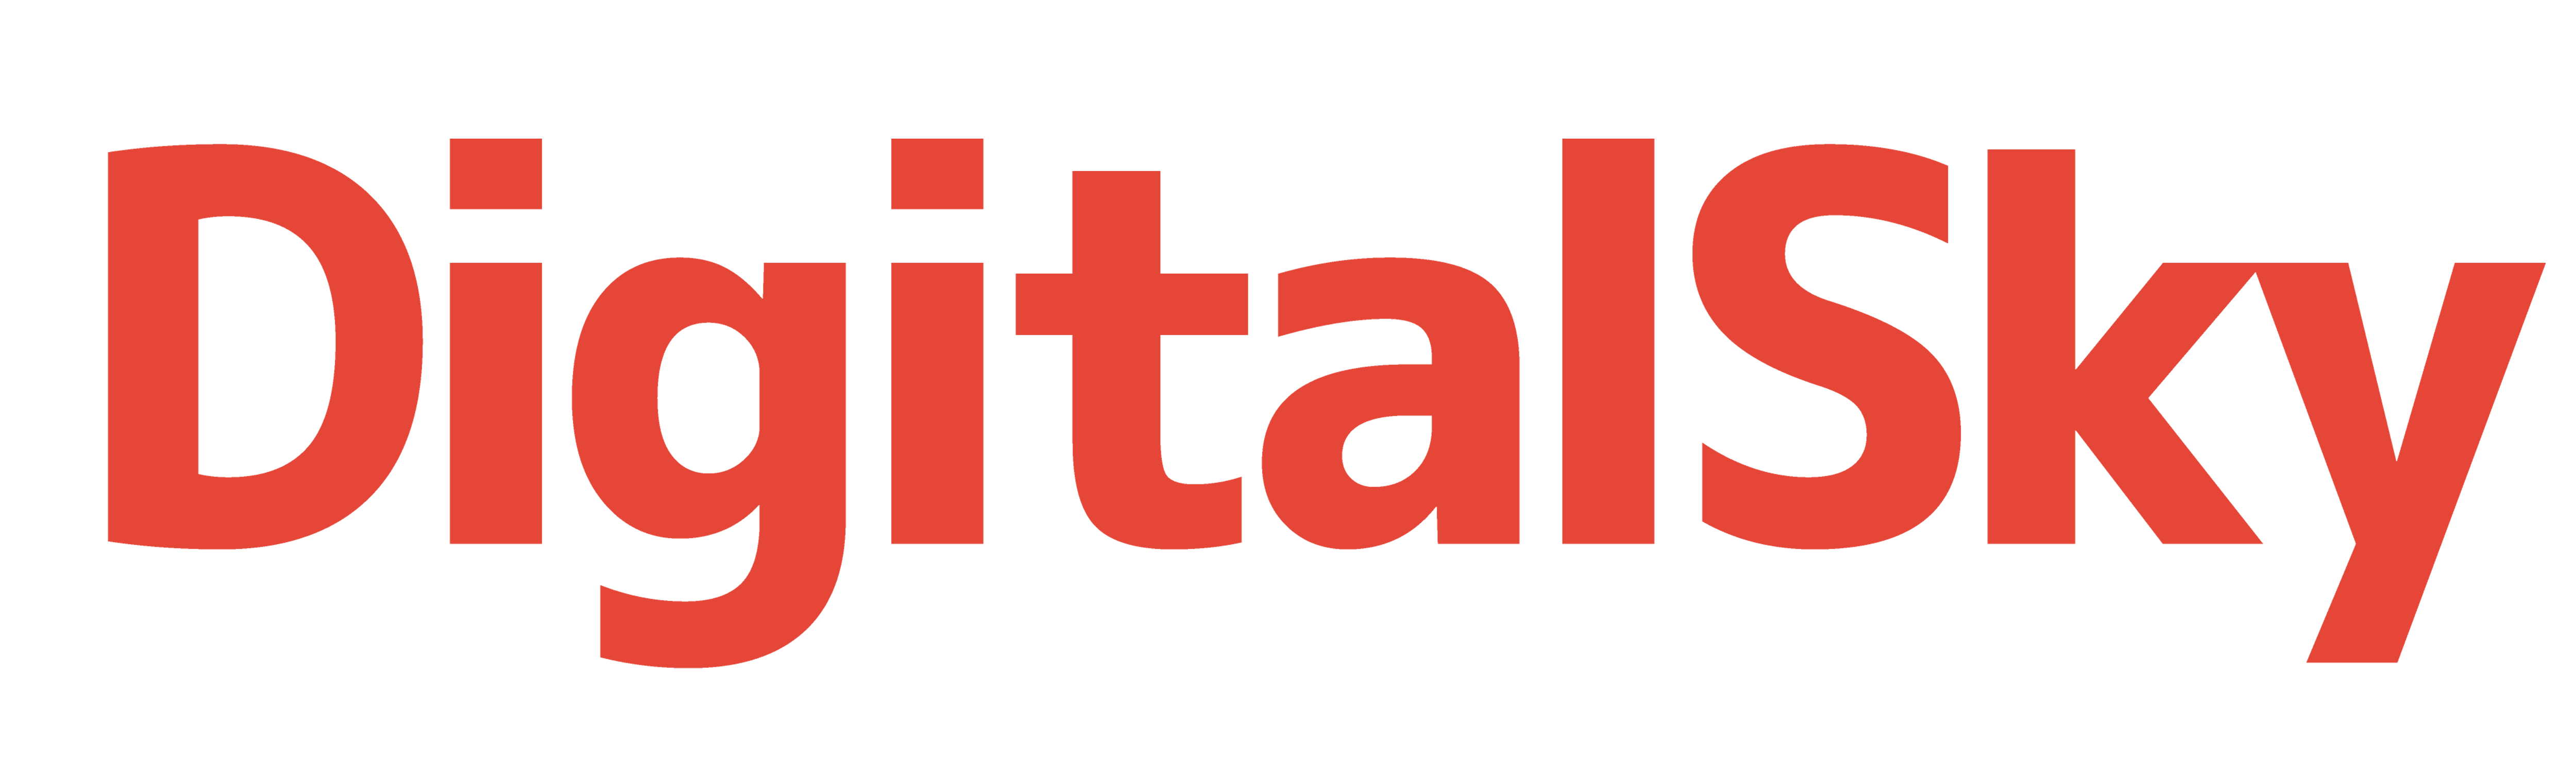 Orange text-based logo for DigitalSky